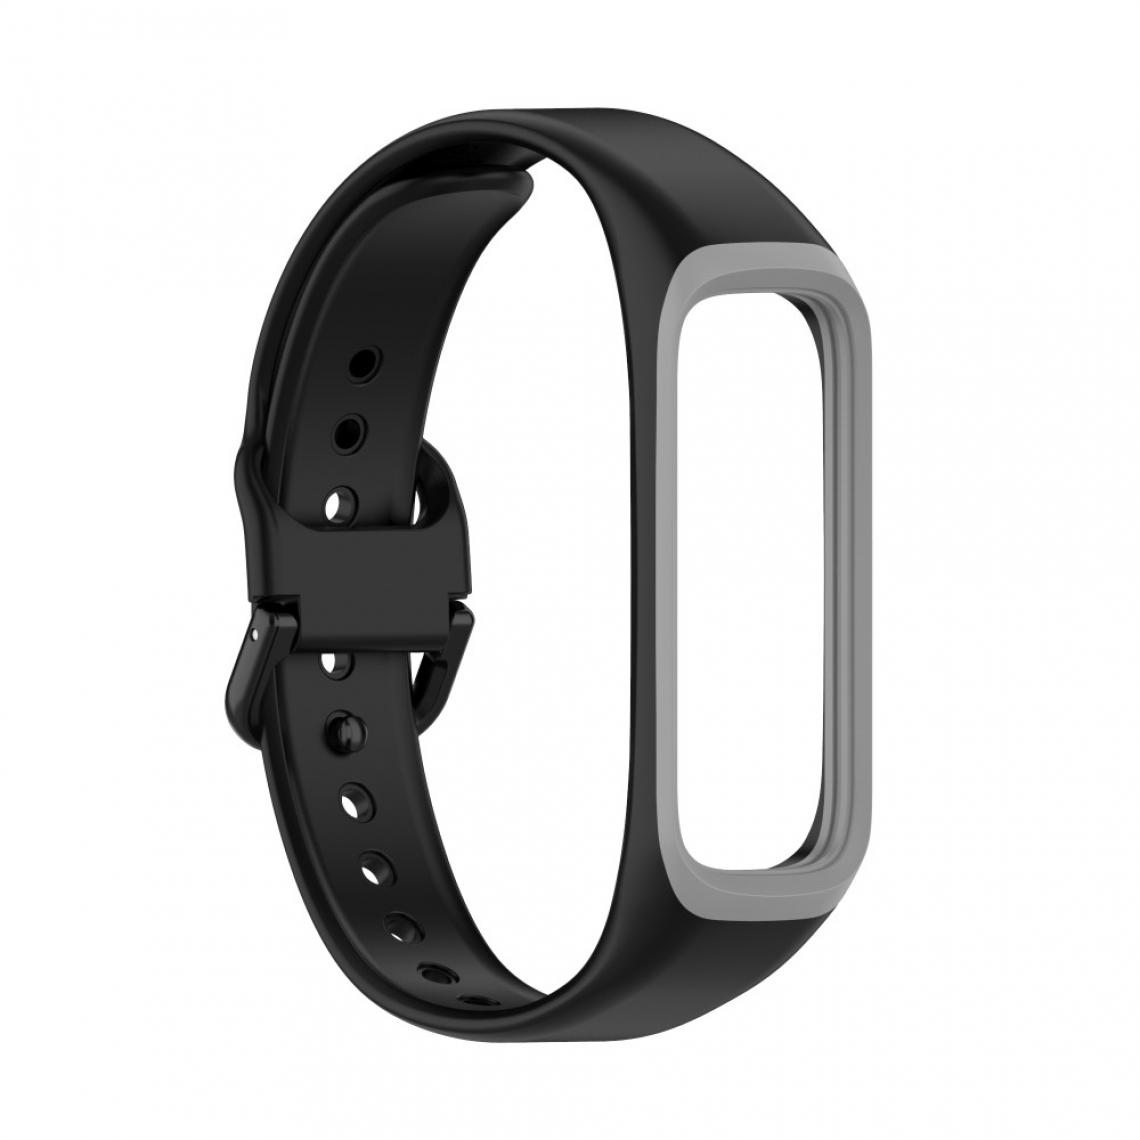 Other - Bracelet en silicone Bicolore noir/gris pour votre Samsung Galaxy Fit 2/SM-R220 - Accessoires bracelet connecté